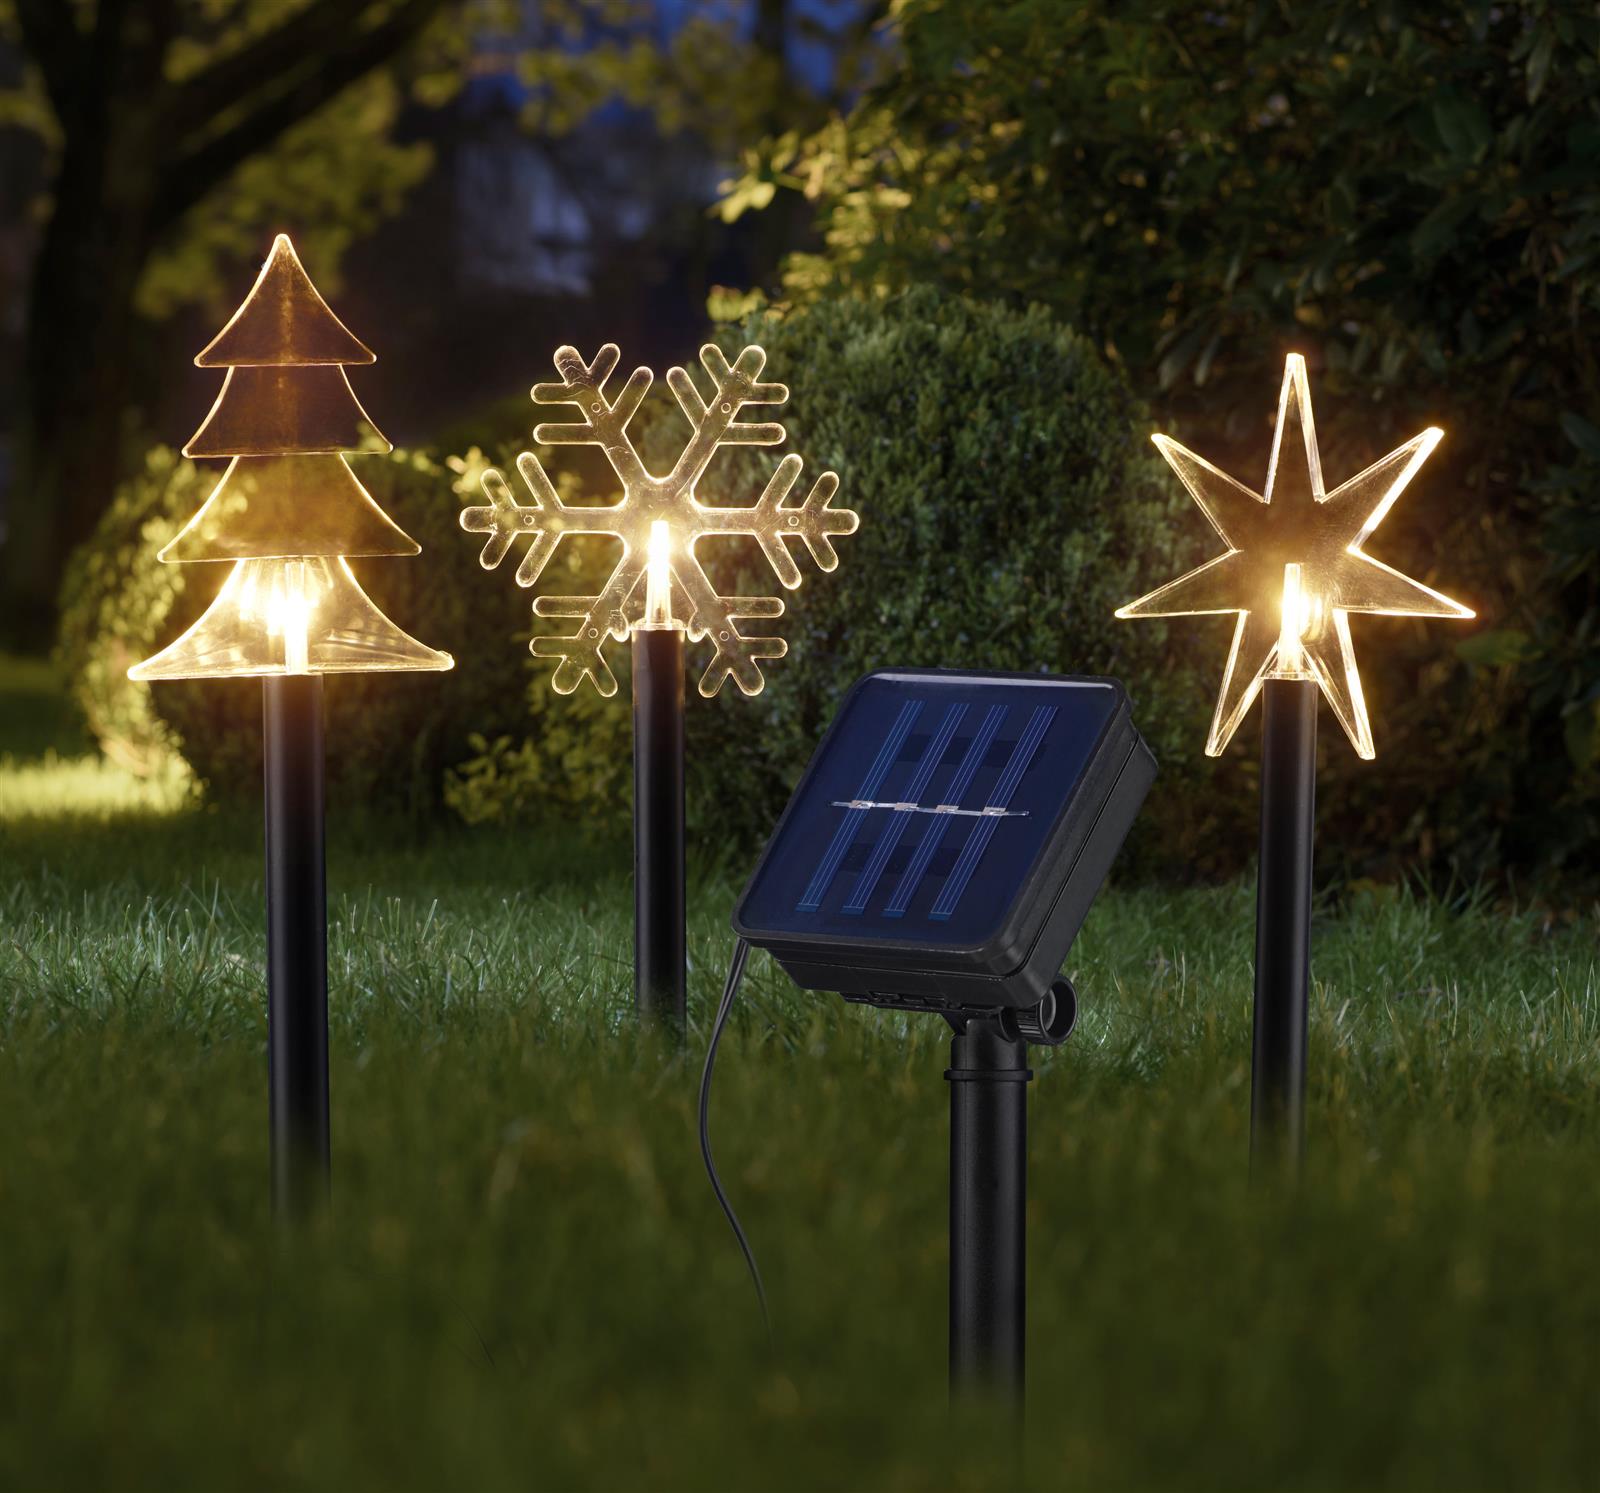 den für | Beleuchtung warm-weiße LED Garten Solar-Gartenstecker, Weihnachtsdeko